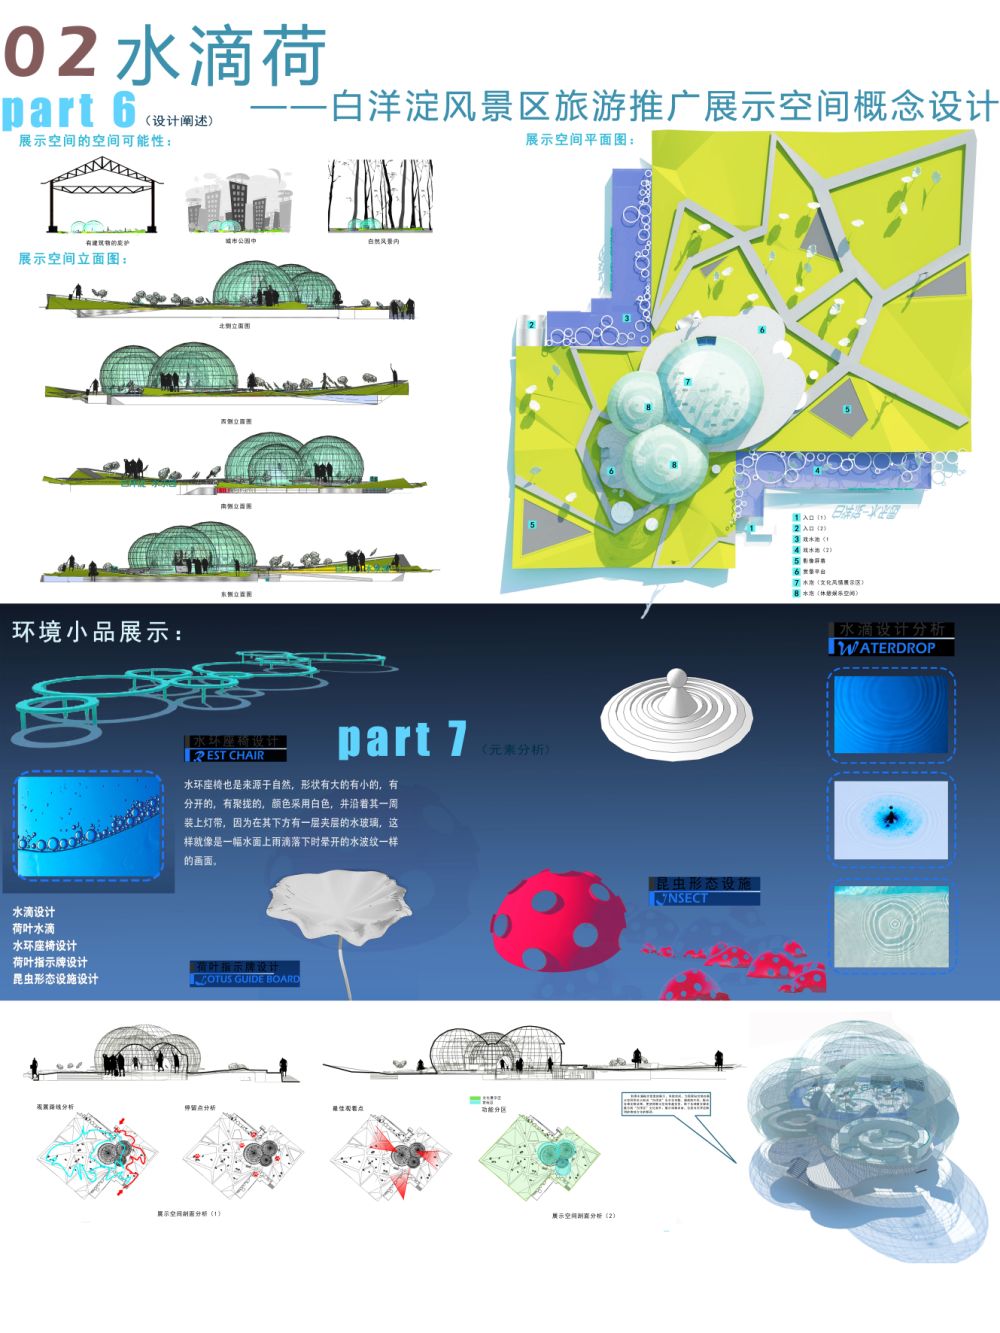 《水滴荷》 - 白洋淀风景区旅游推广展示空间概念设计-2